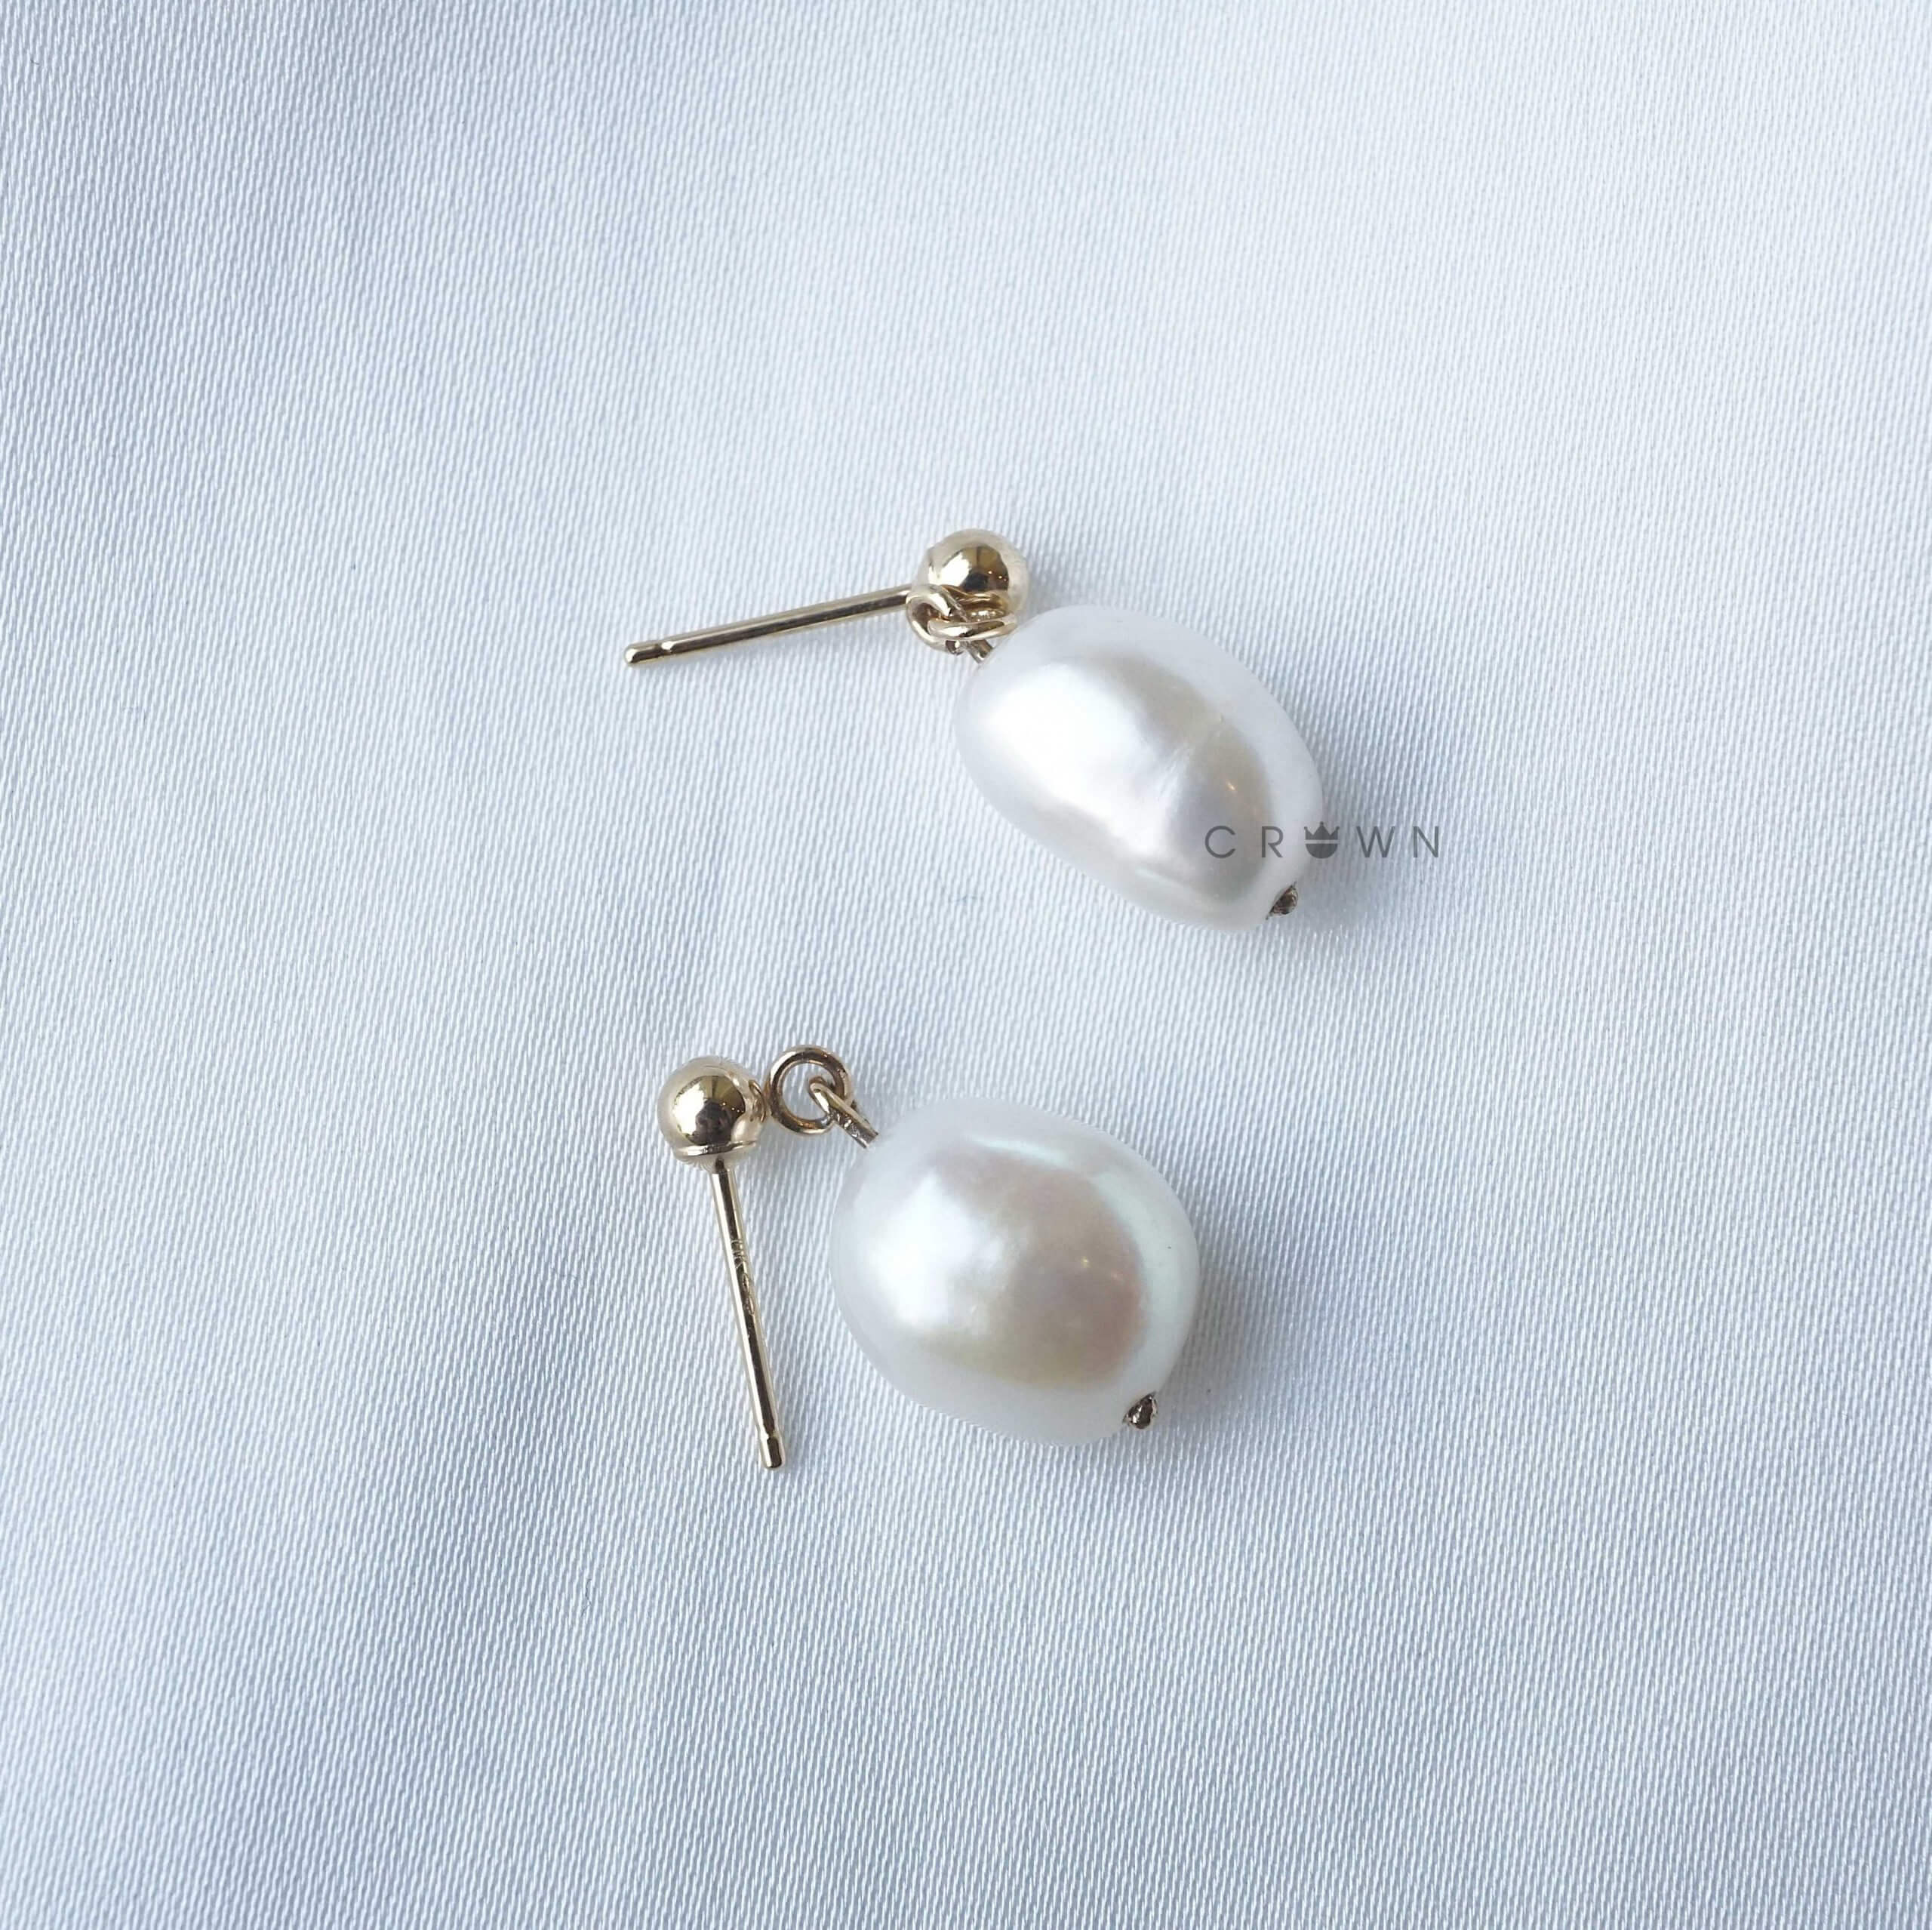 Elizabeth Locke Pearl Earring Charms | Neiman Marcus